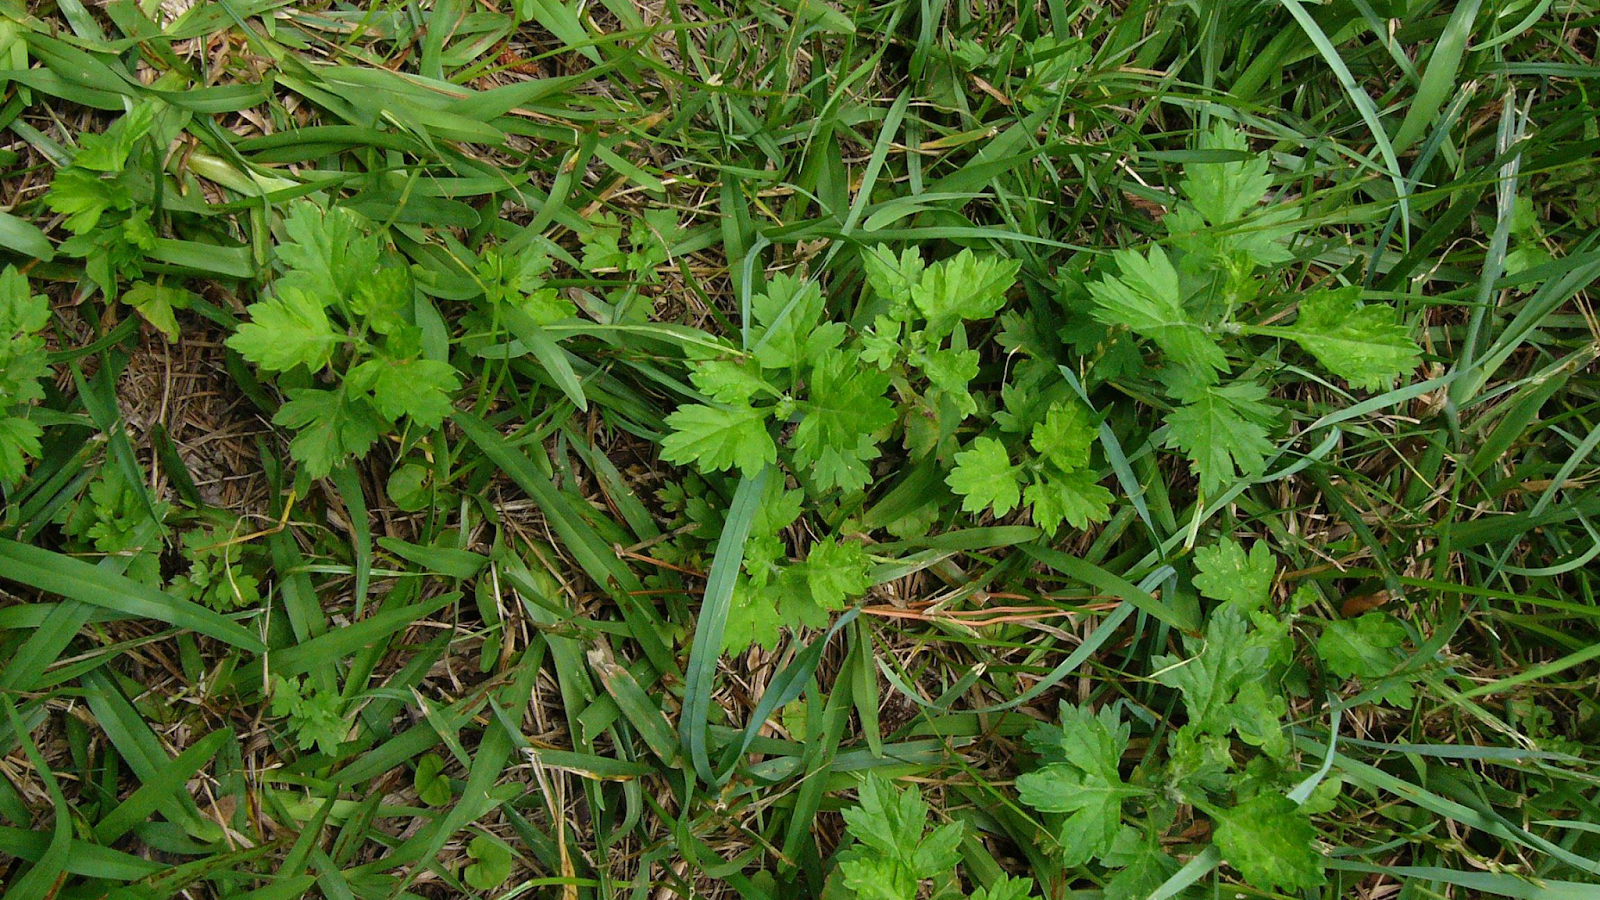 Mugwort leaves in grass